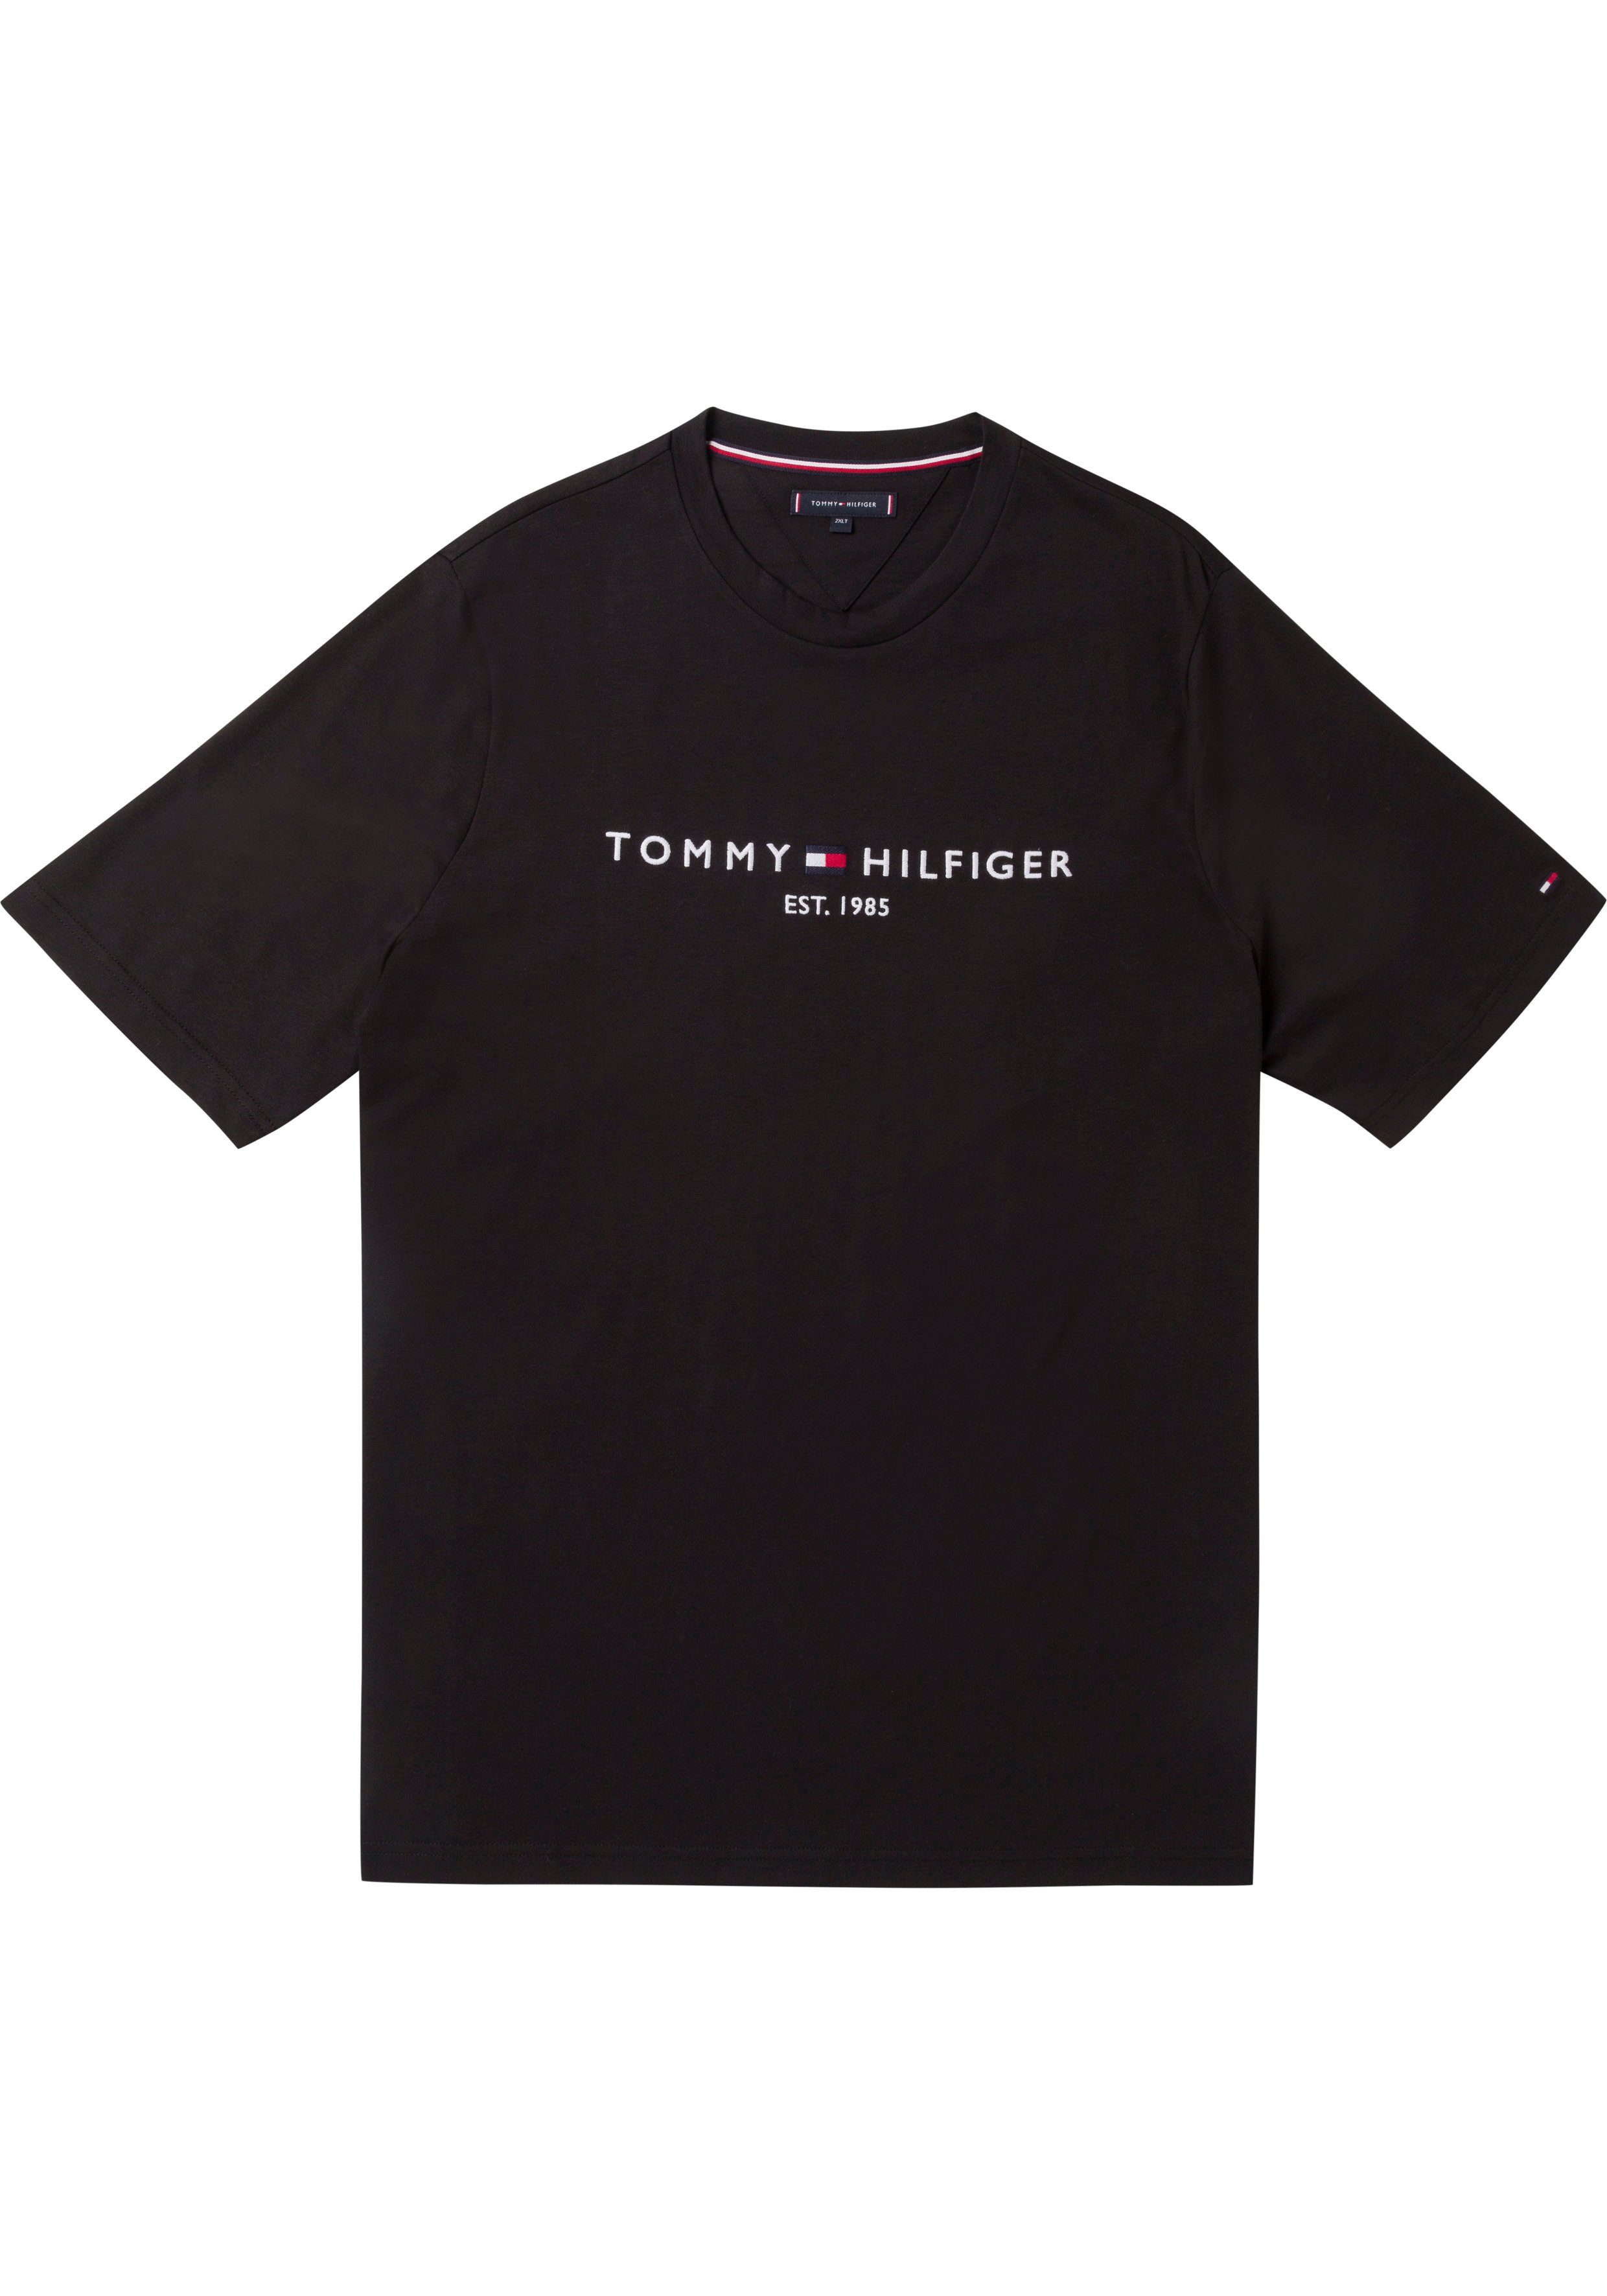 Schnäppchenpreise Tommy Hilfiger Big Logoschriftzug Tall mit schwarz BT-TOMMY auf LOGO & TEE-B der T-Shirt Brust Tommy Hilfiger